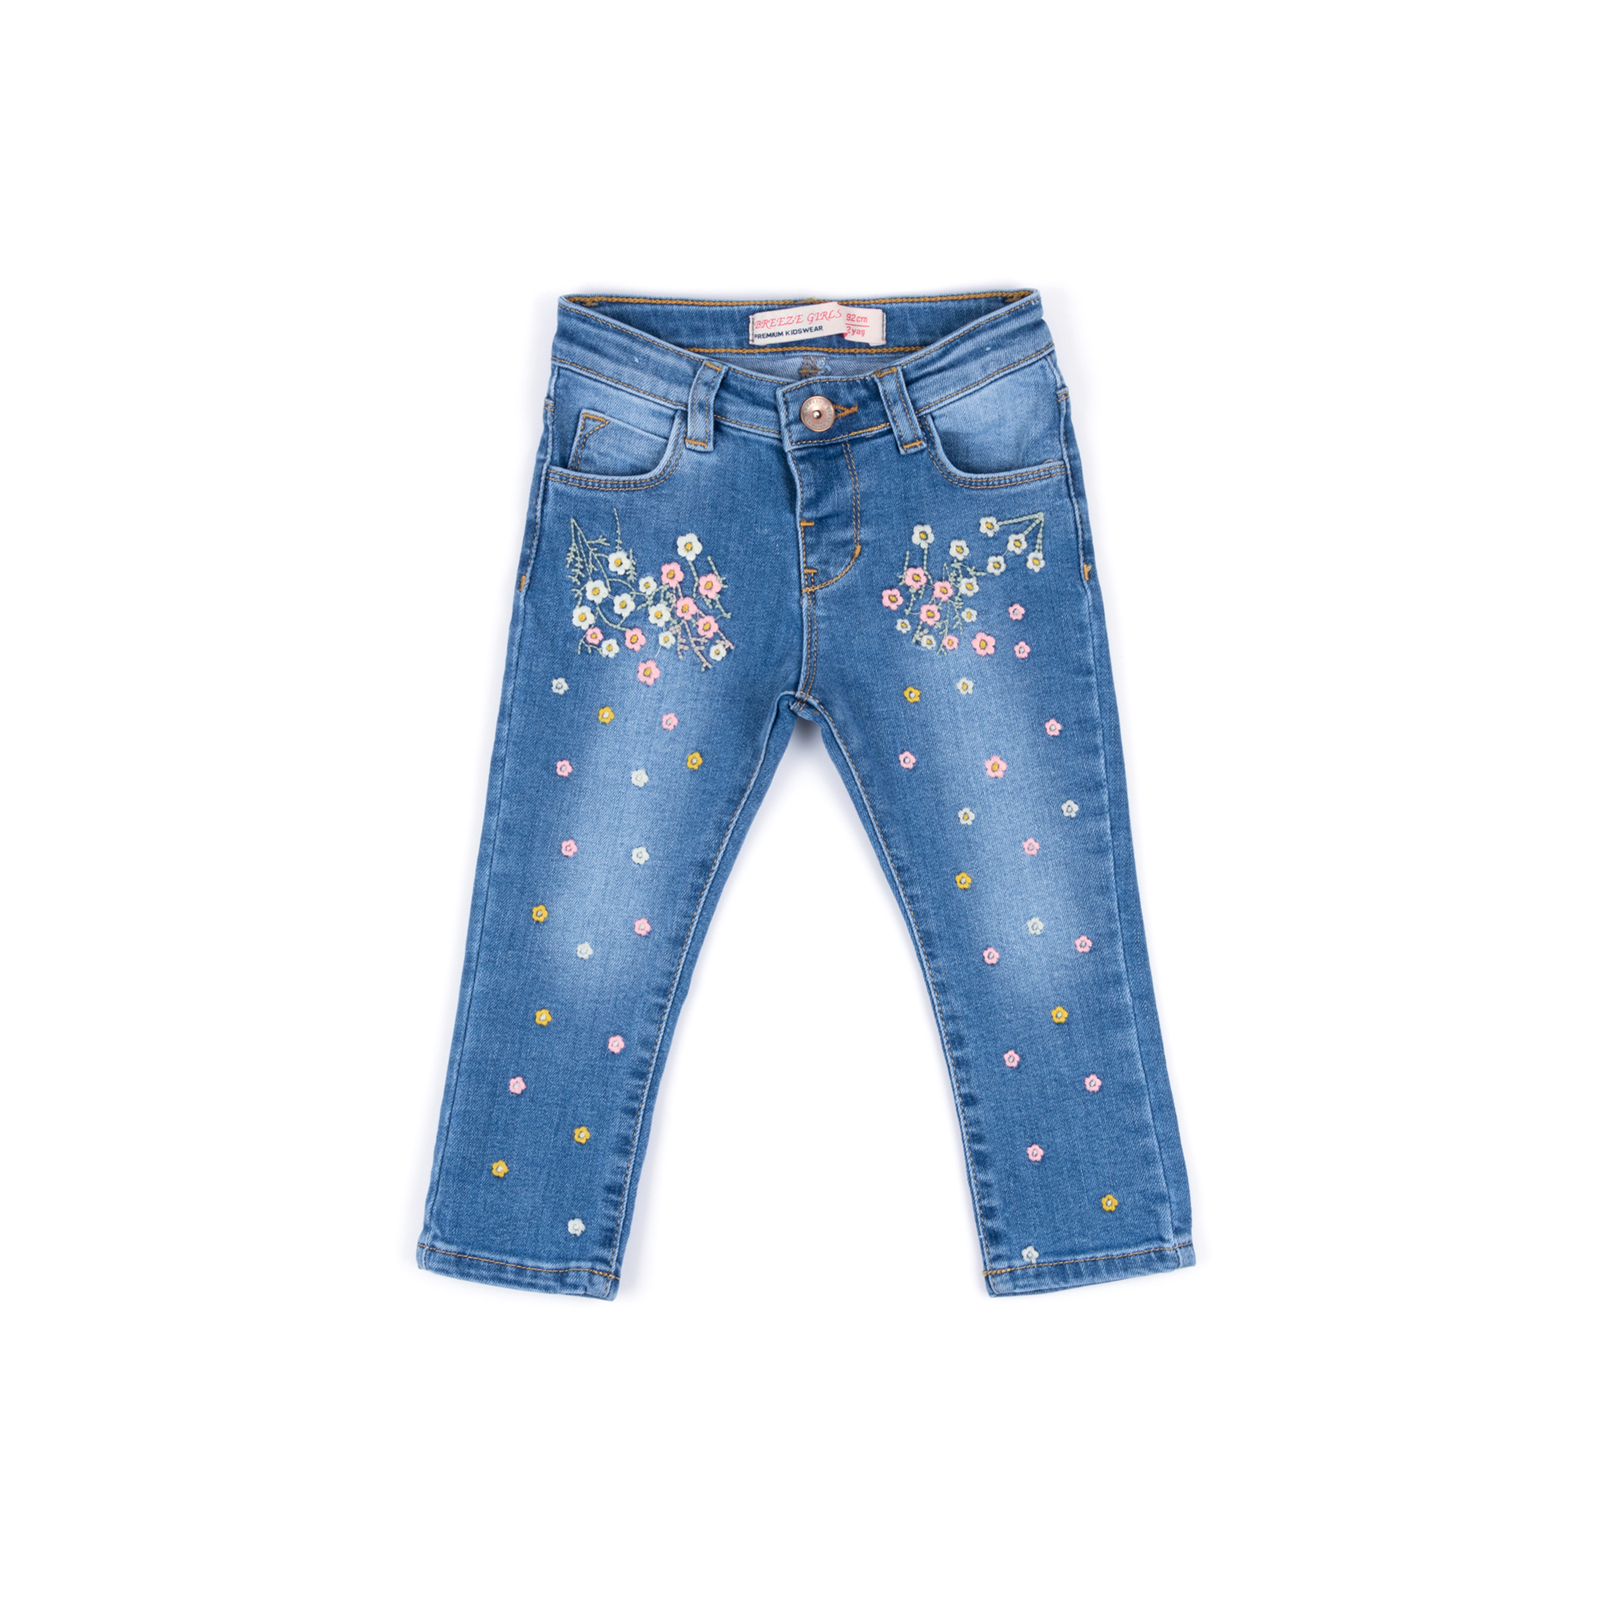 Джинсы Breeze джинсовые с цветочками (OZ-17703-92G-jeans)